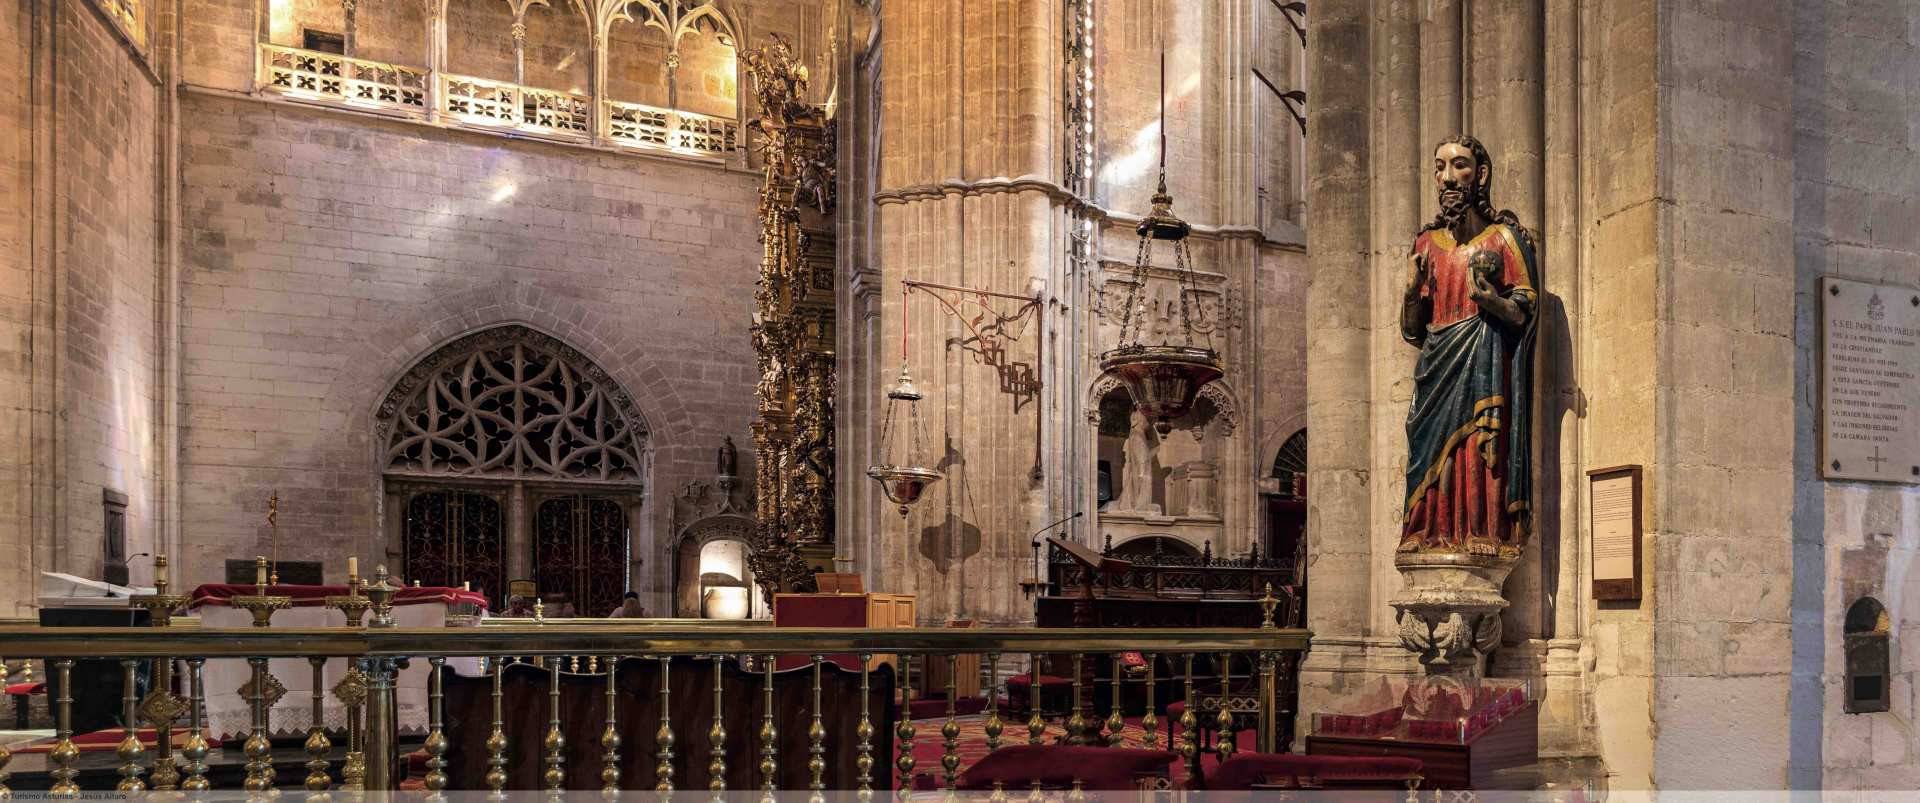 La talla de San Salvador es venerada por los peregrinos que visitan la Catedral de Oviedo/Uviéu. ©Jesús Alfaro.